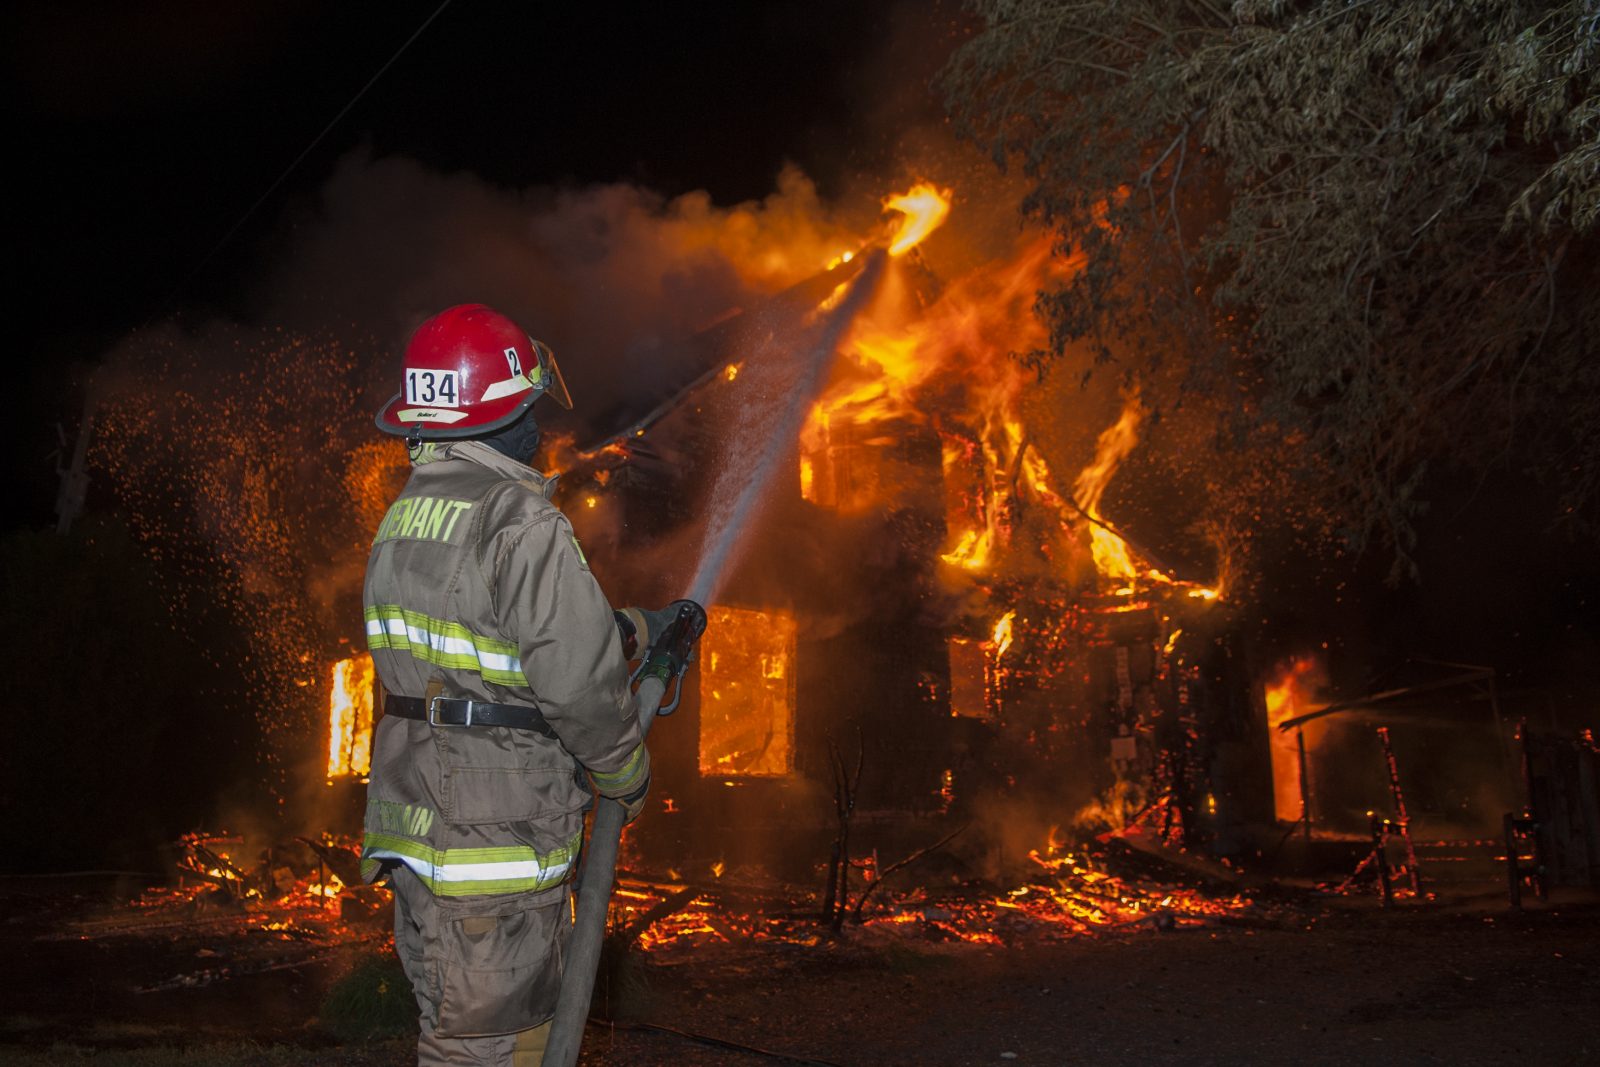 Une famille sauvée in extremis d’un incendie